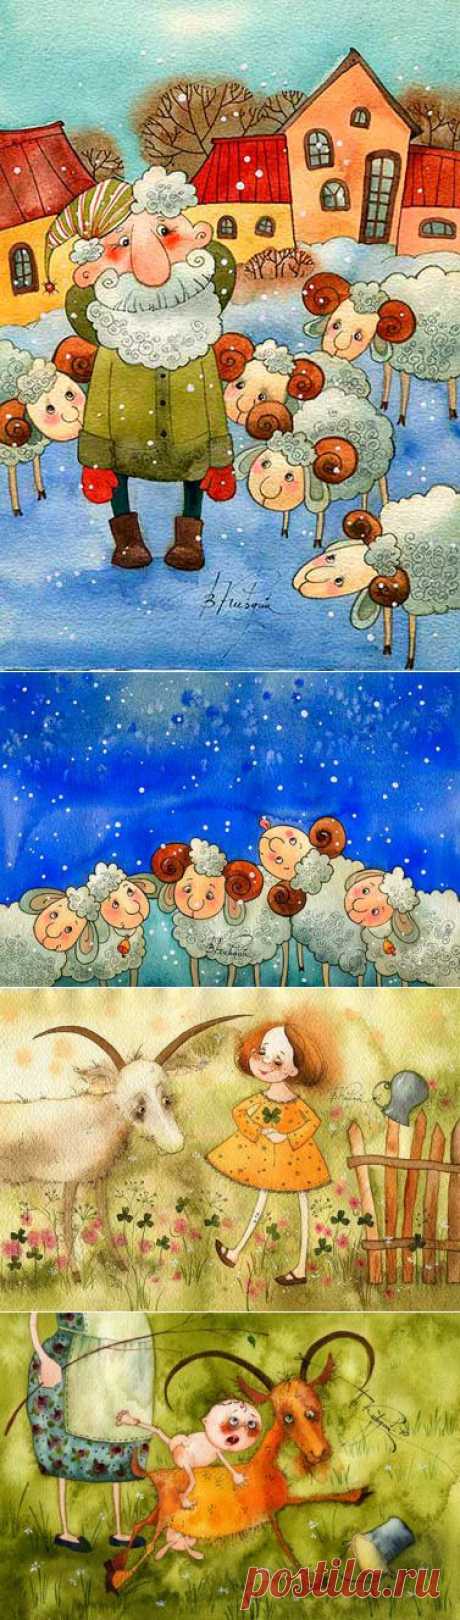 Рисунки коз и овечек художницы В. Кирдий. Позитивные рисунки, для создания праздничного новогоднего настроения в 2015 году. | Интересное